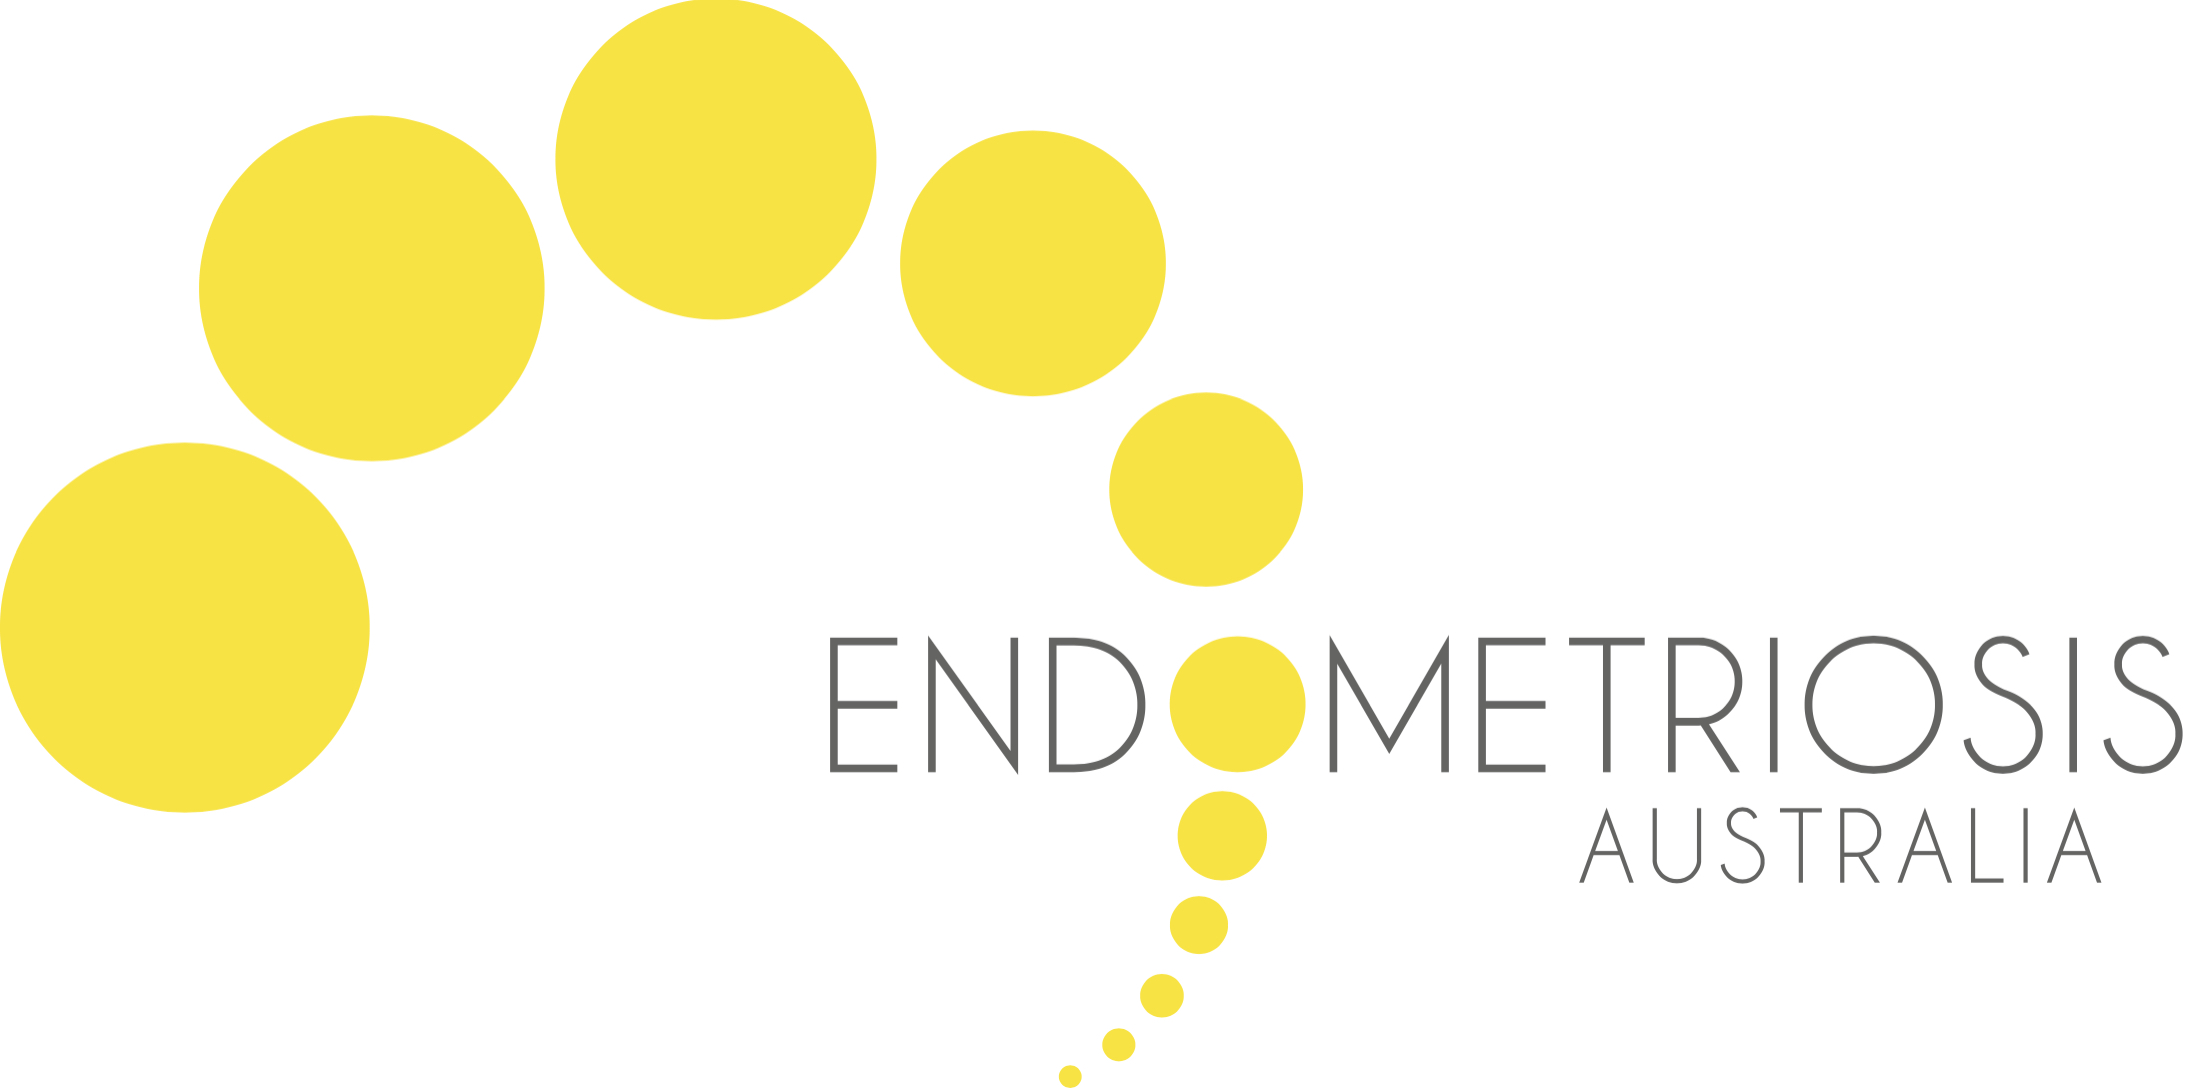 Adolescent Endometriosis